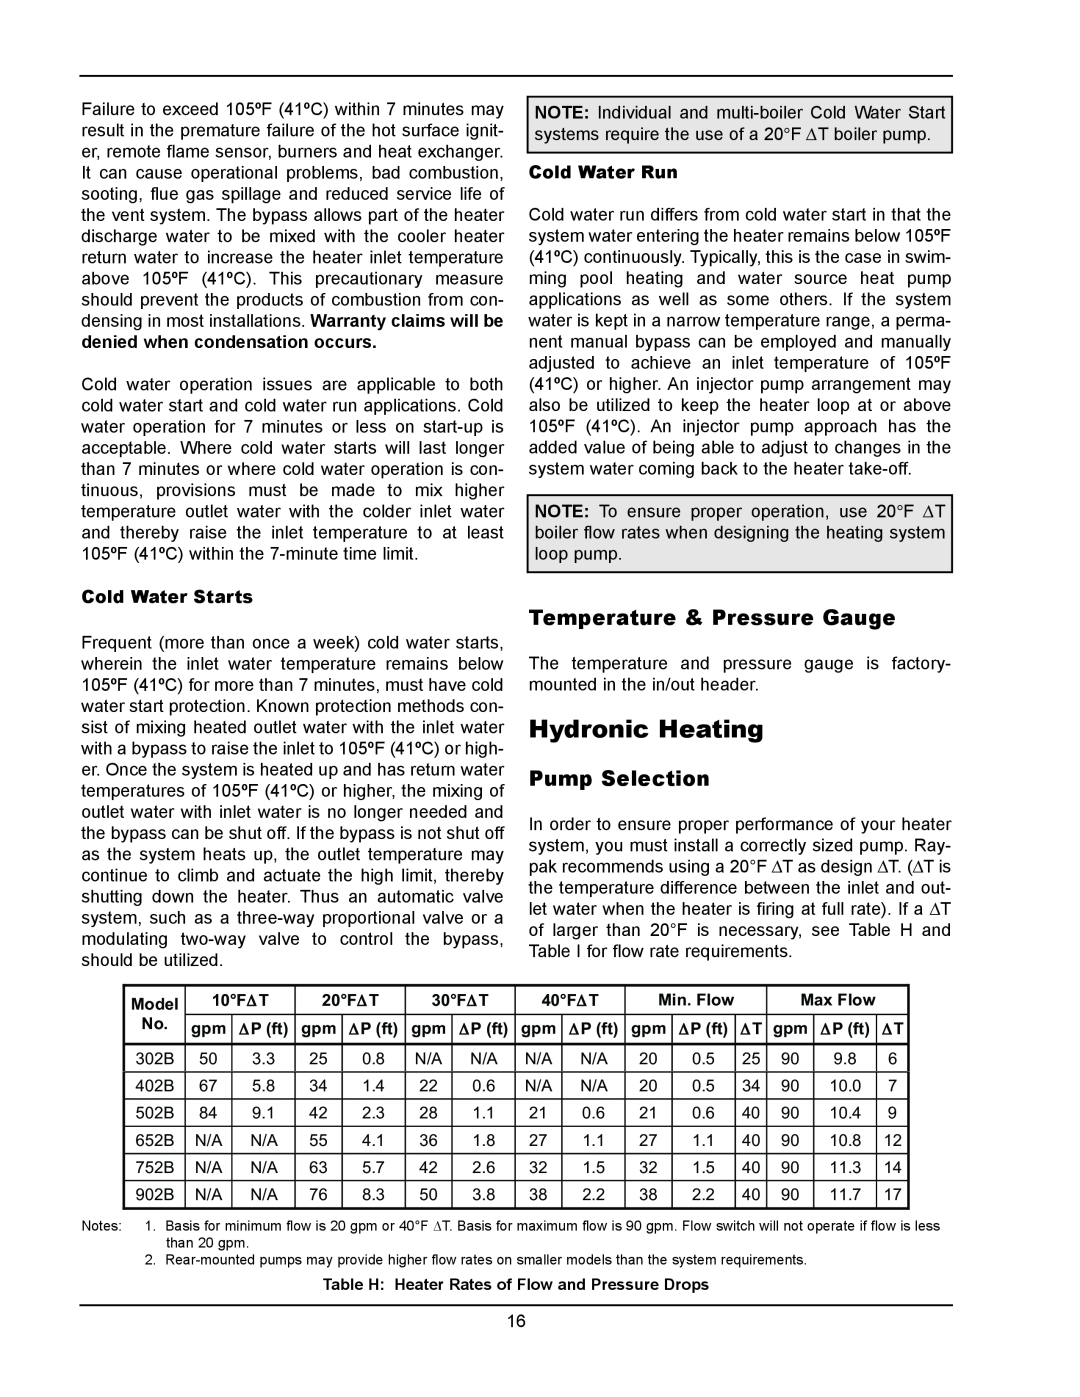 Raypak 902B, 302B manual Hydronic Heating, Temperature & Pressure Gauge, Pump Selection 